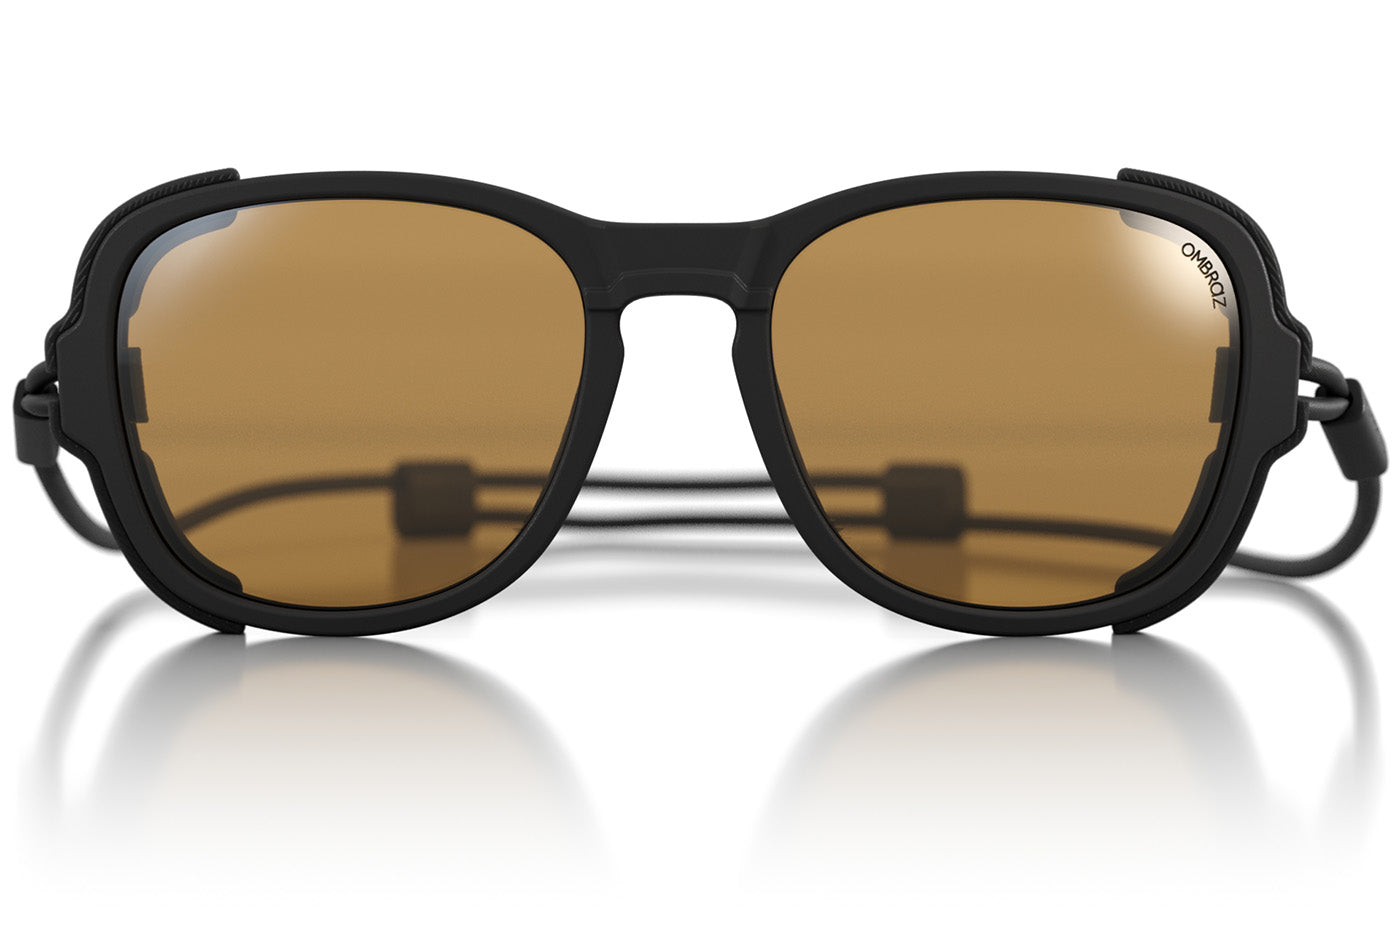 Ombraz Teton XL Size Tortoise Polarized Brown Sunglasses